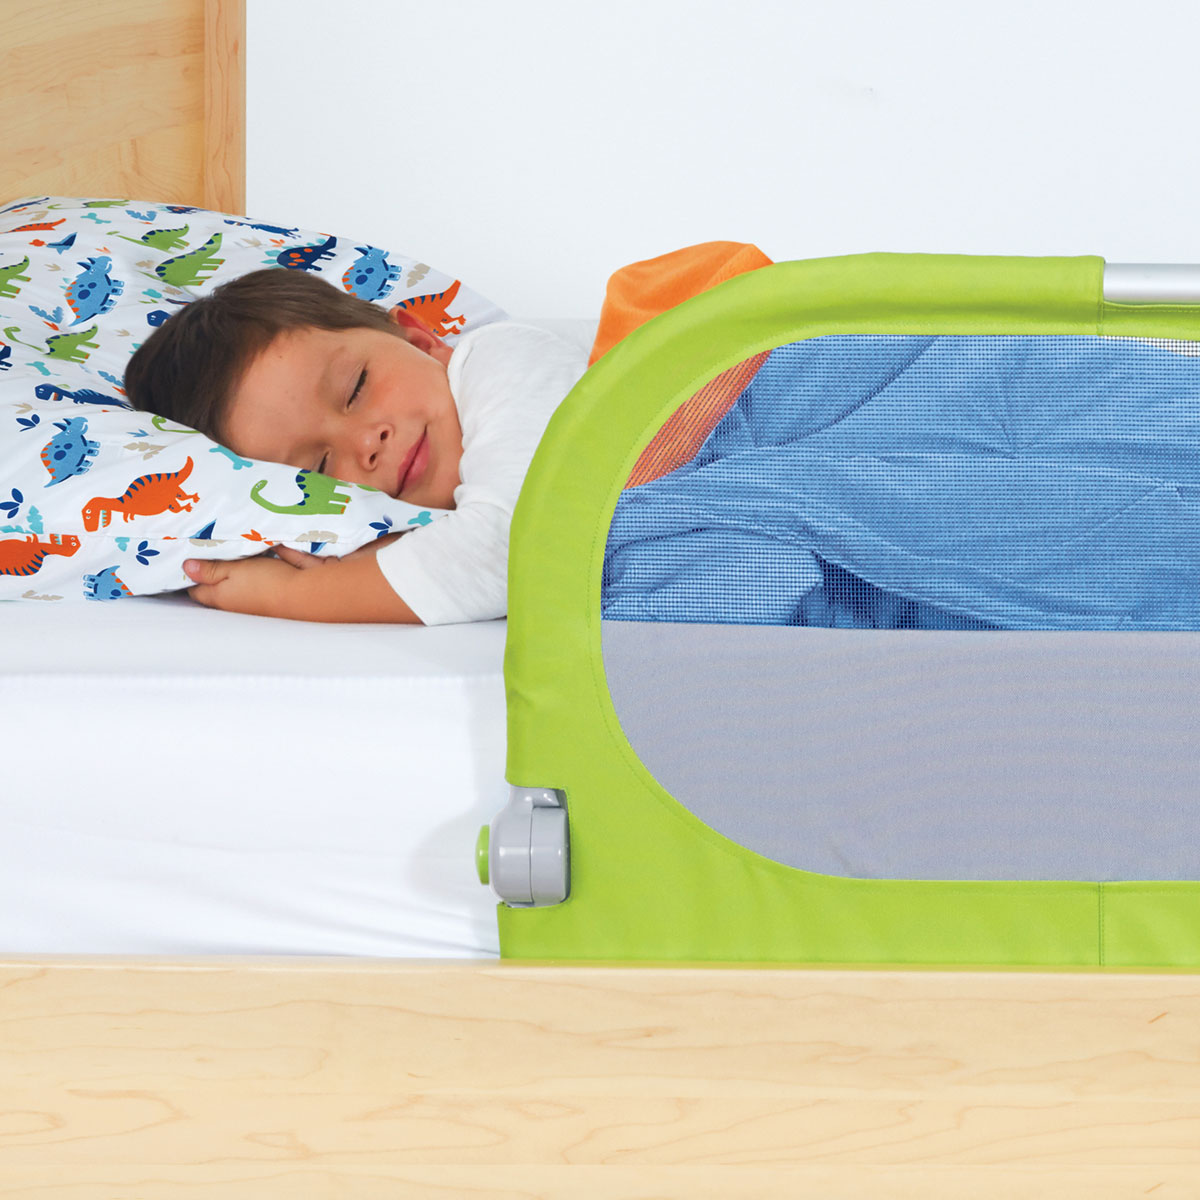 Thanh chặn giường Munchkin MK44147 tiện sử dụng và an toàn cho bé